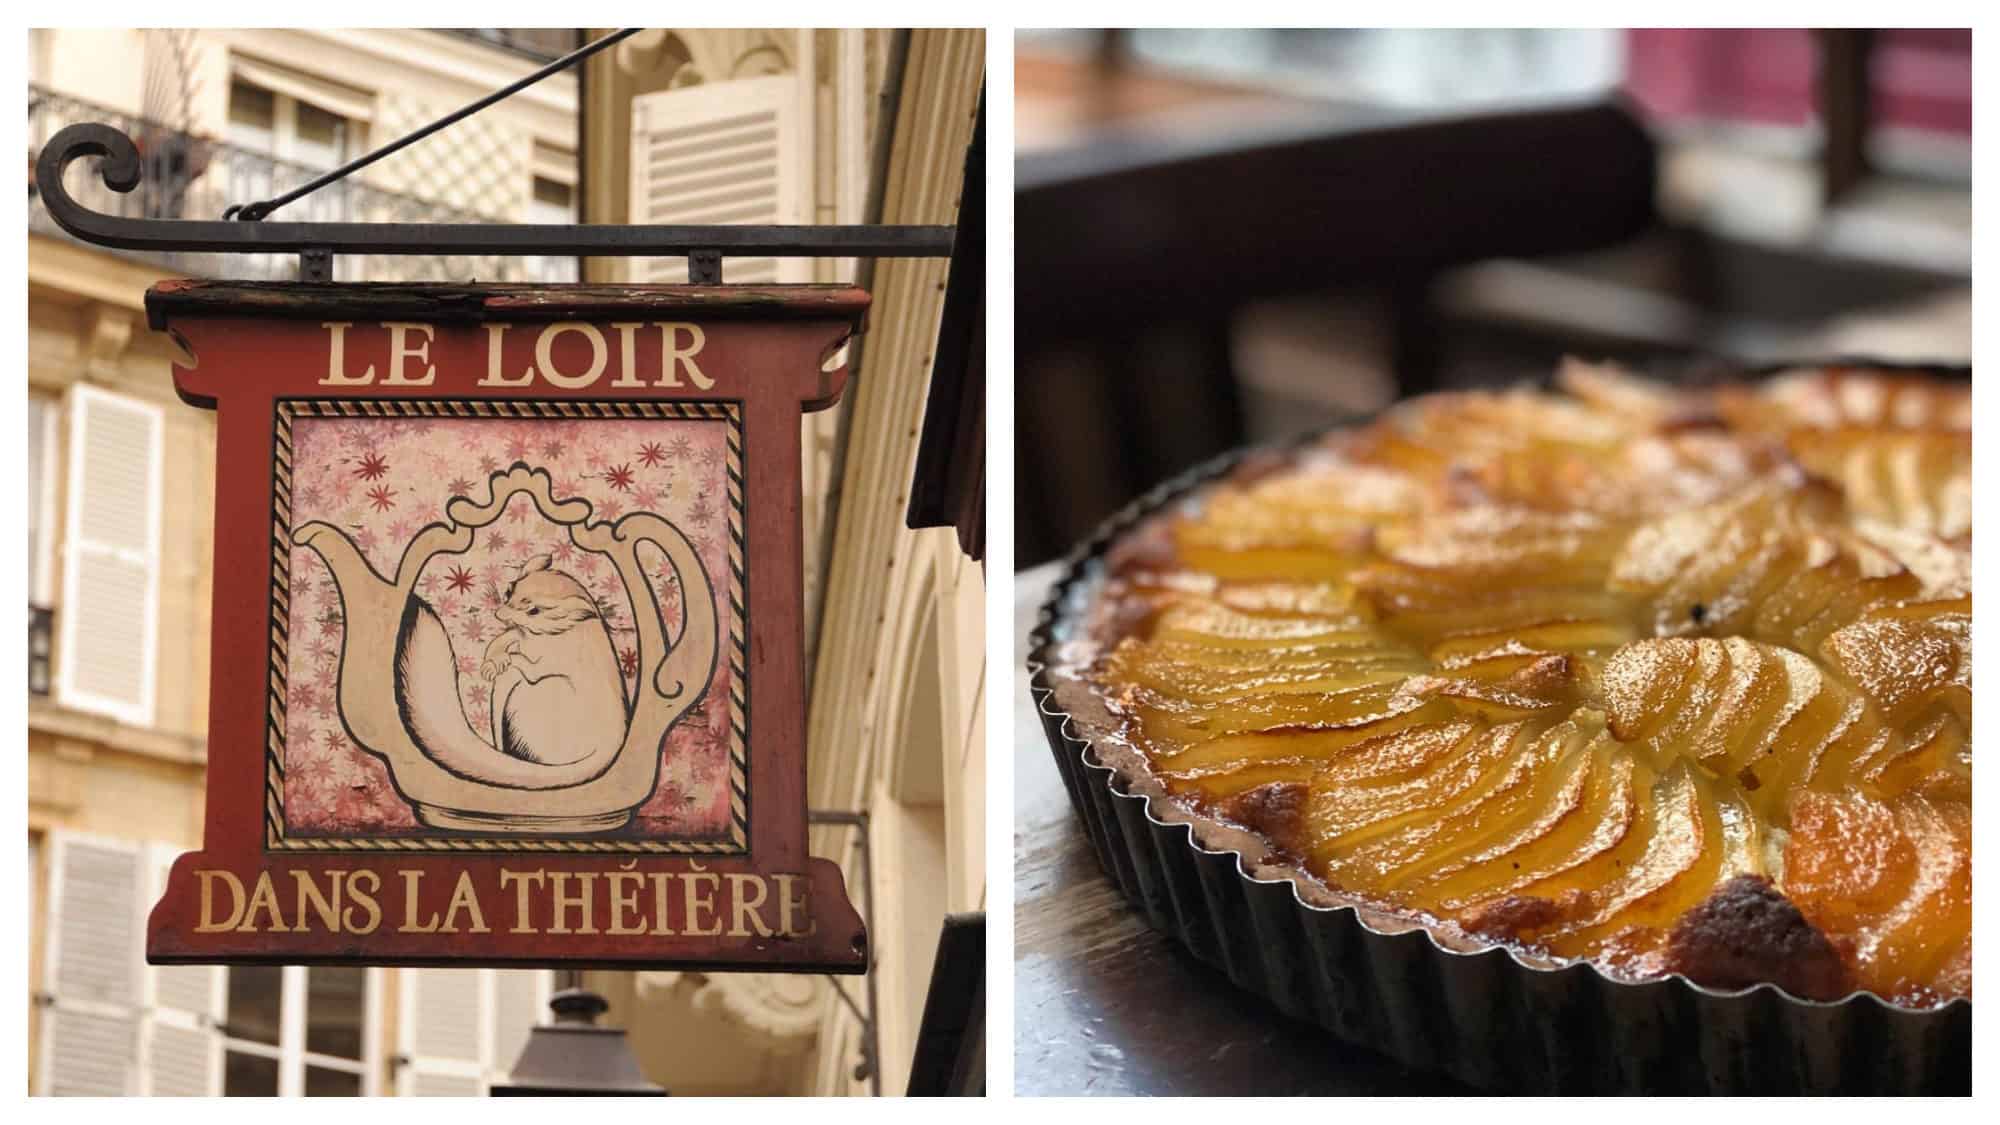 The sign of Le Loir dans la Théière café in Paris' Marais area (left) and a pear tart on a wooden table (right).